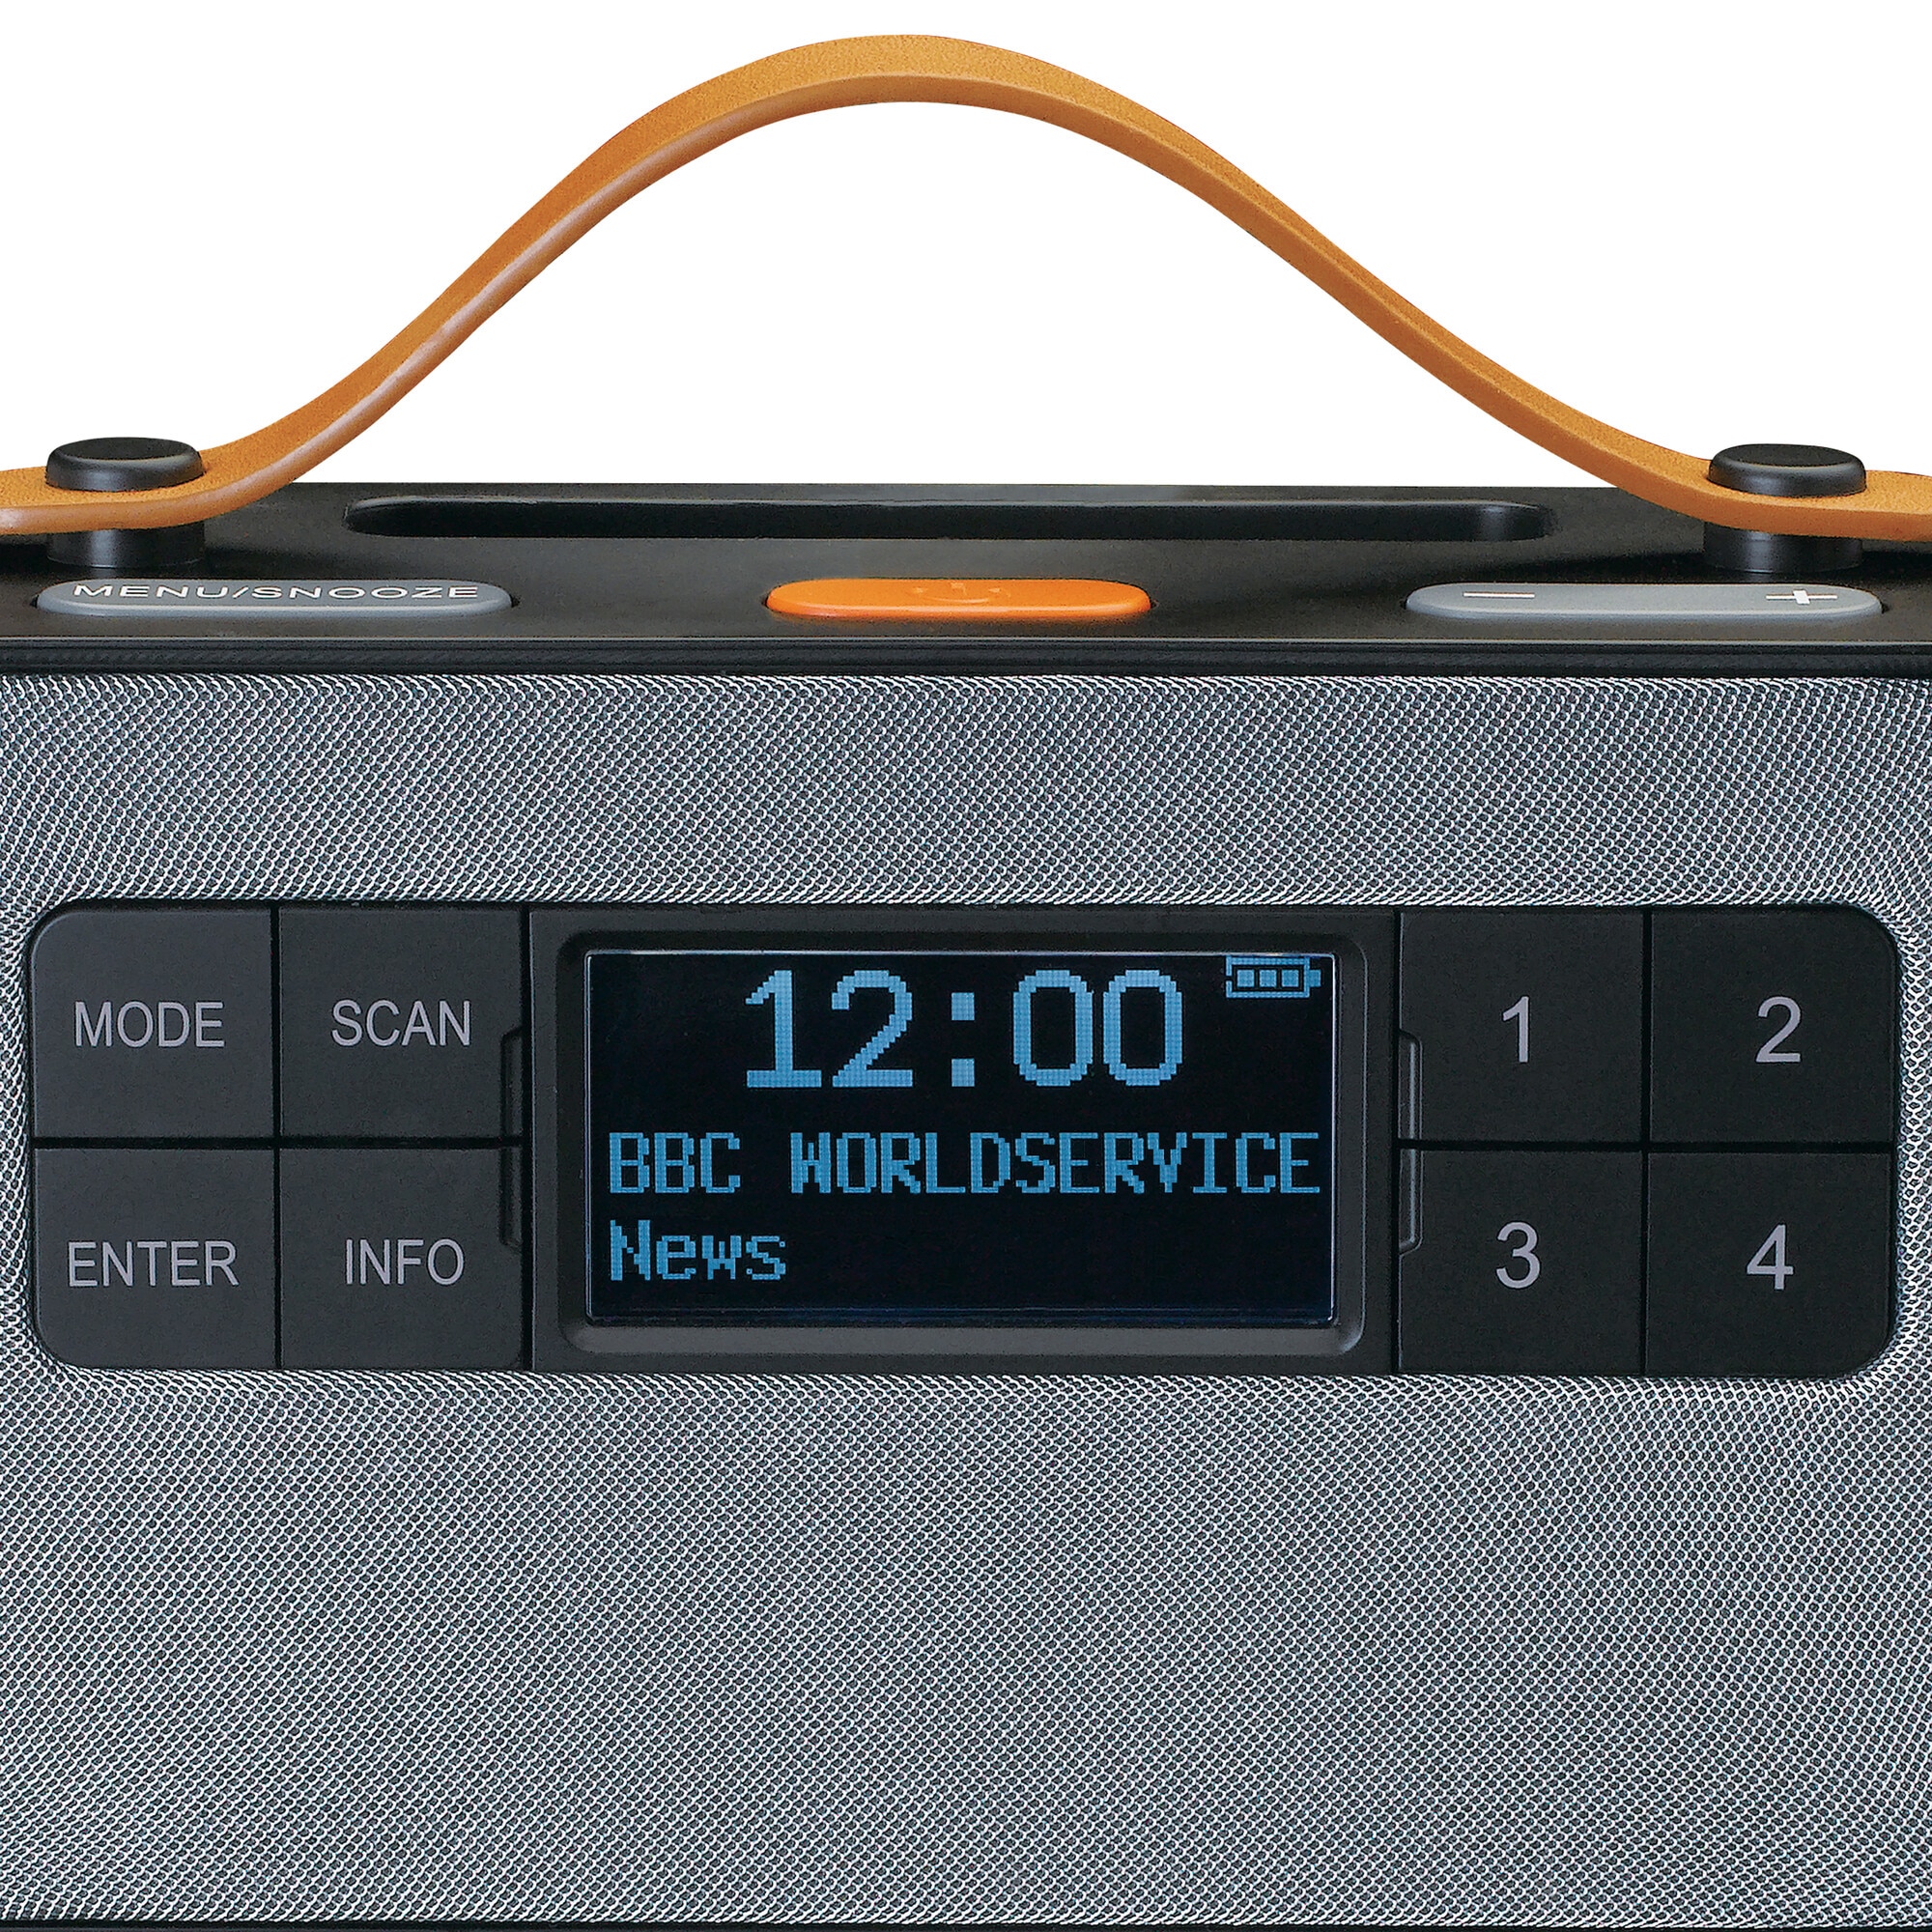 Lenco Digitalradio (DAB+) »PDR-065BK«, (Digitalradio (DAB+)-FM-Tuner mit RDS 4 W)